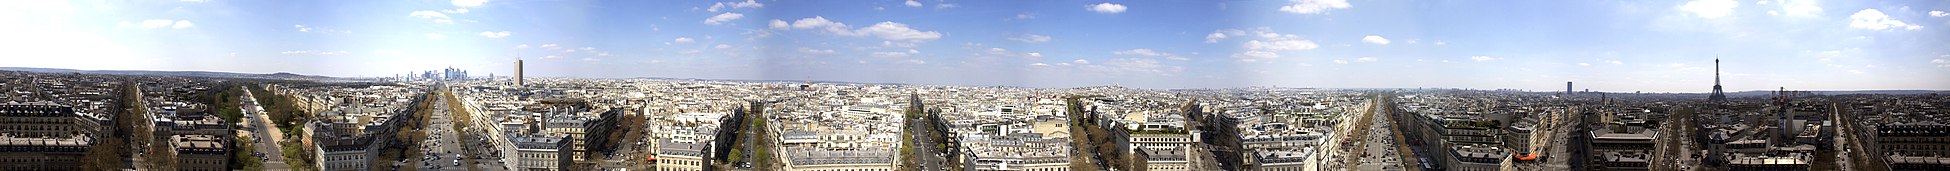 Panoramablick auf Paris von der Spitze des Arc de Triomphe aus gesehen, rechts der Eiffelturm